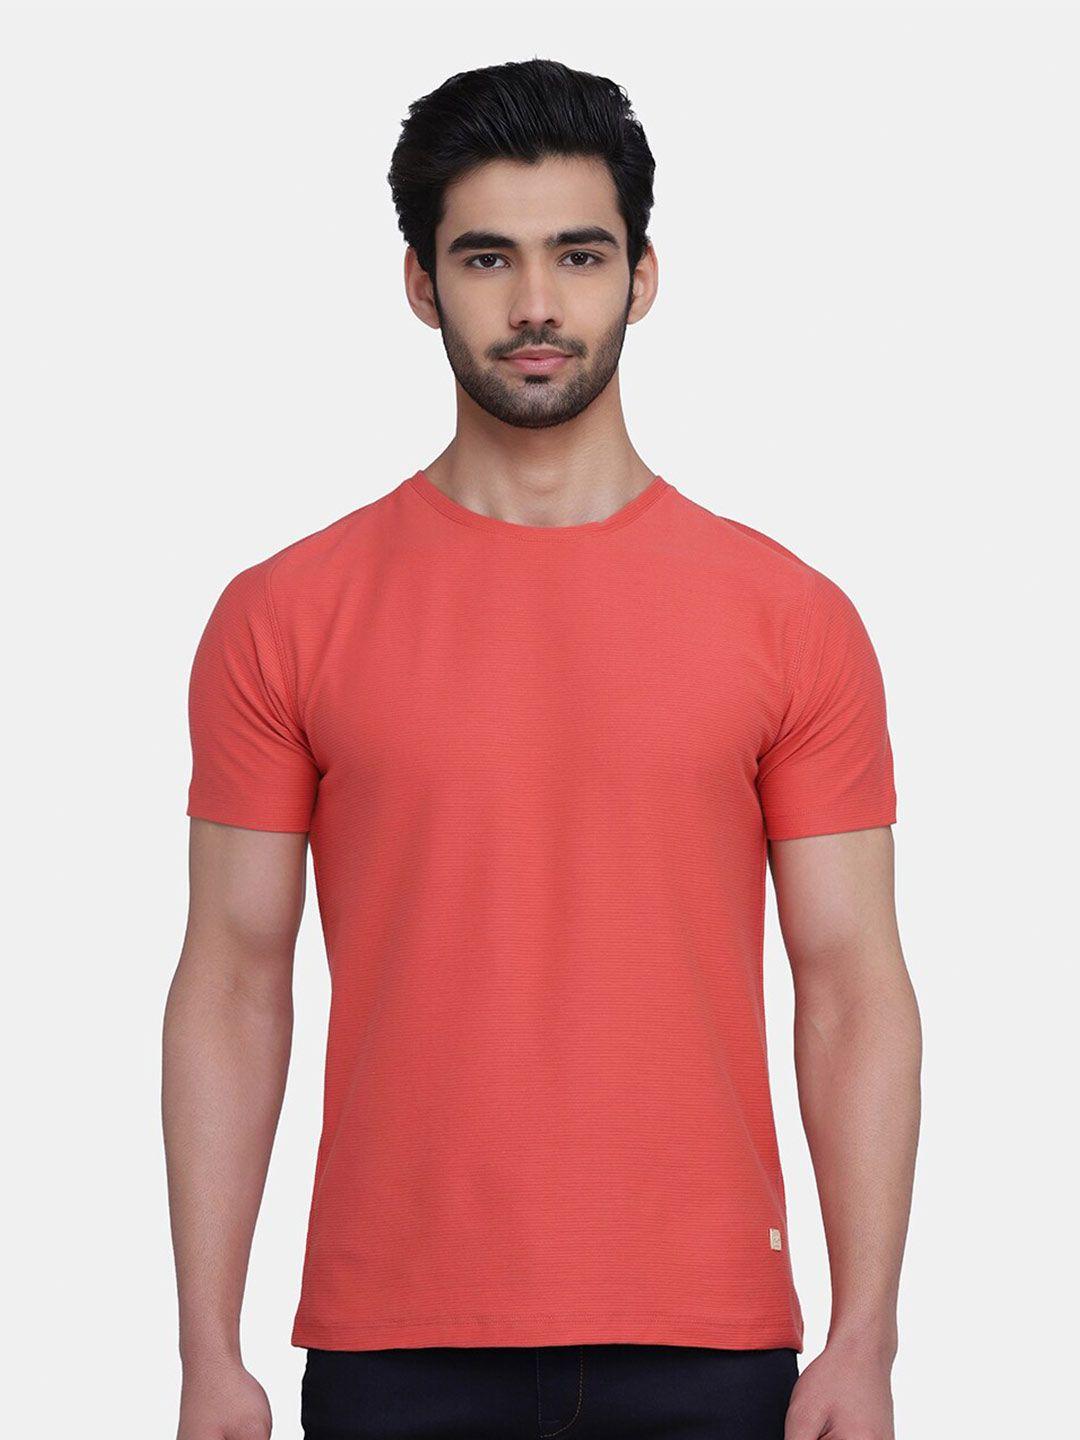 blackberrys-men-coral-red-slim-fit-cotton-t-shirt